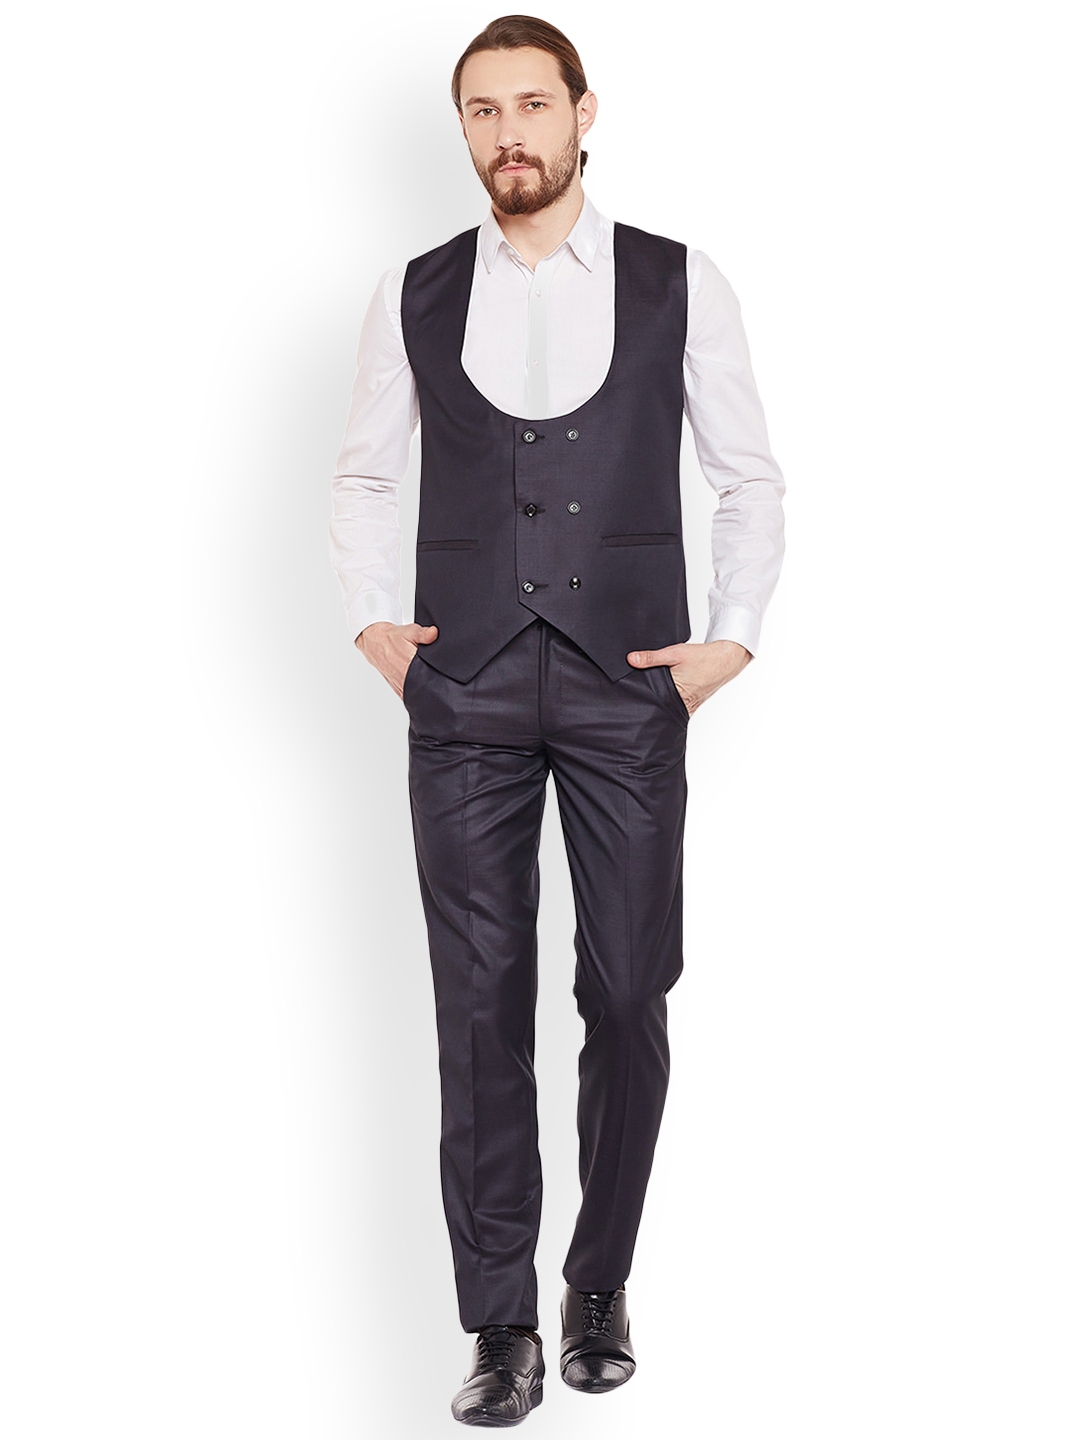 Jack  Jones Premium Slim Waistcoat In Grey Check  ASOS